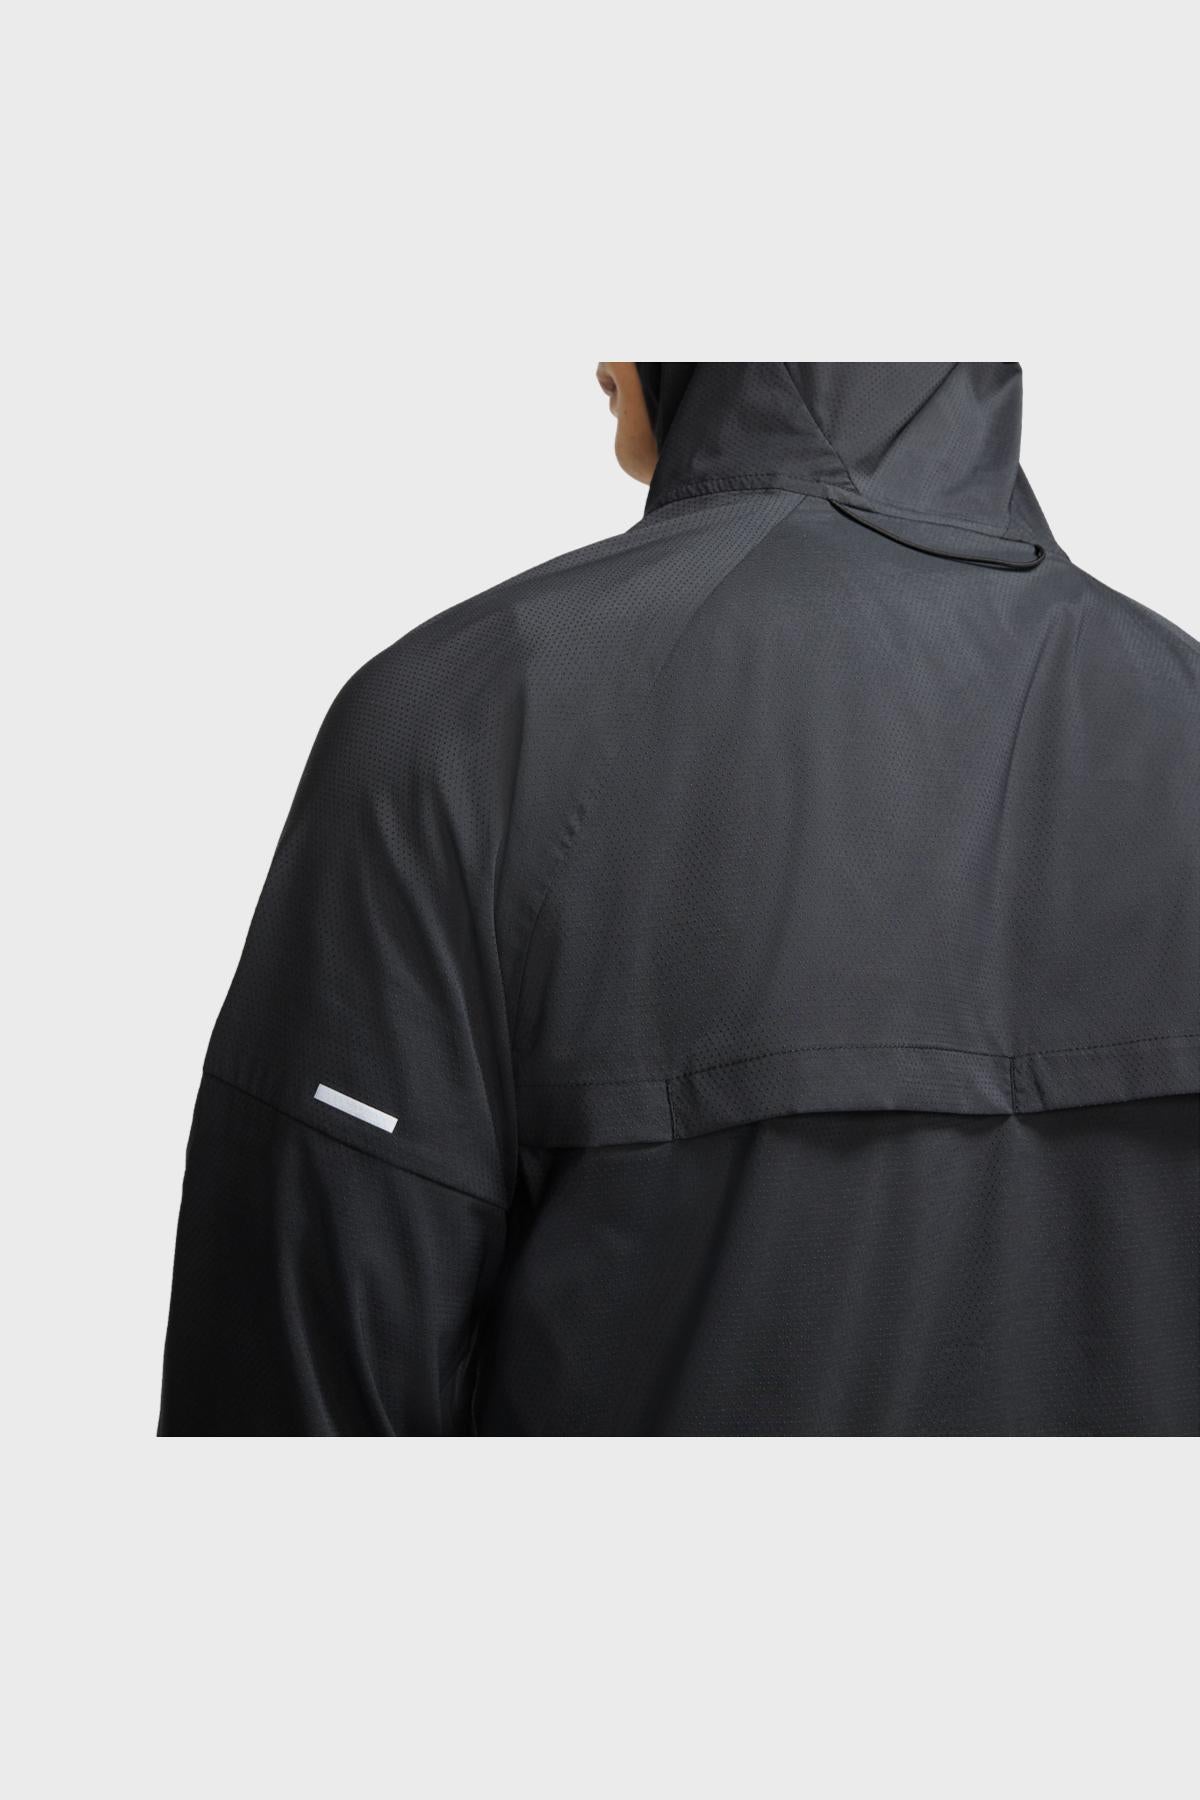 Nike - Windrunner Jacket